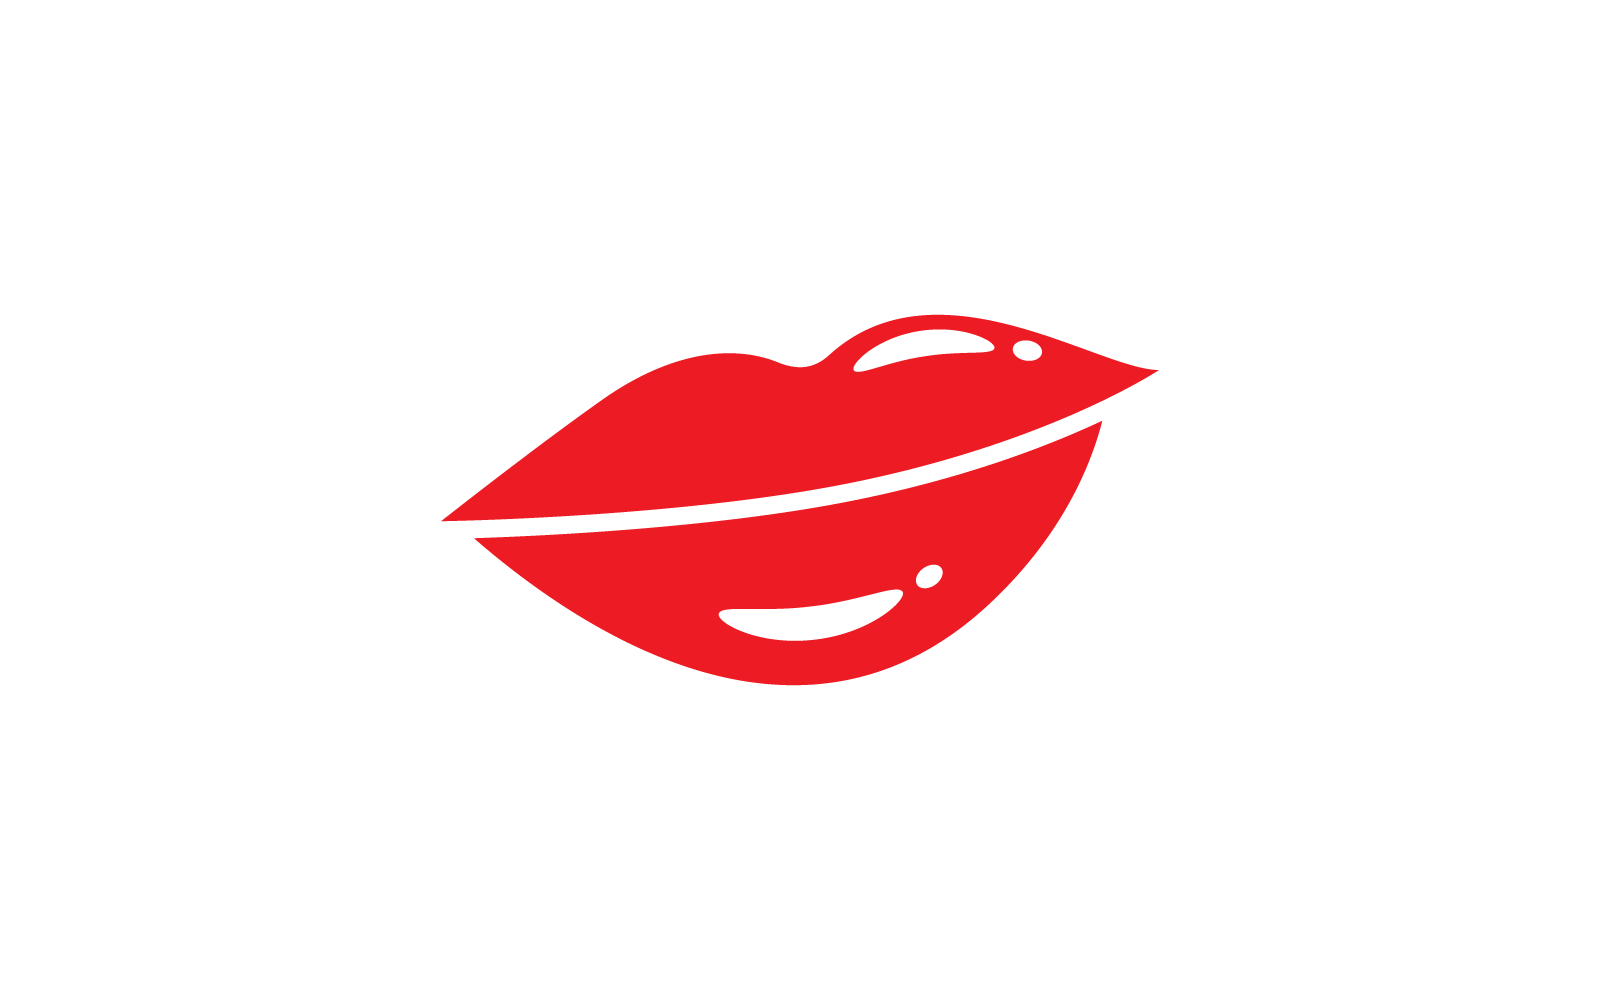 Beauty lips women design vector template